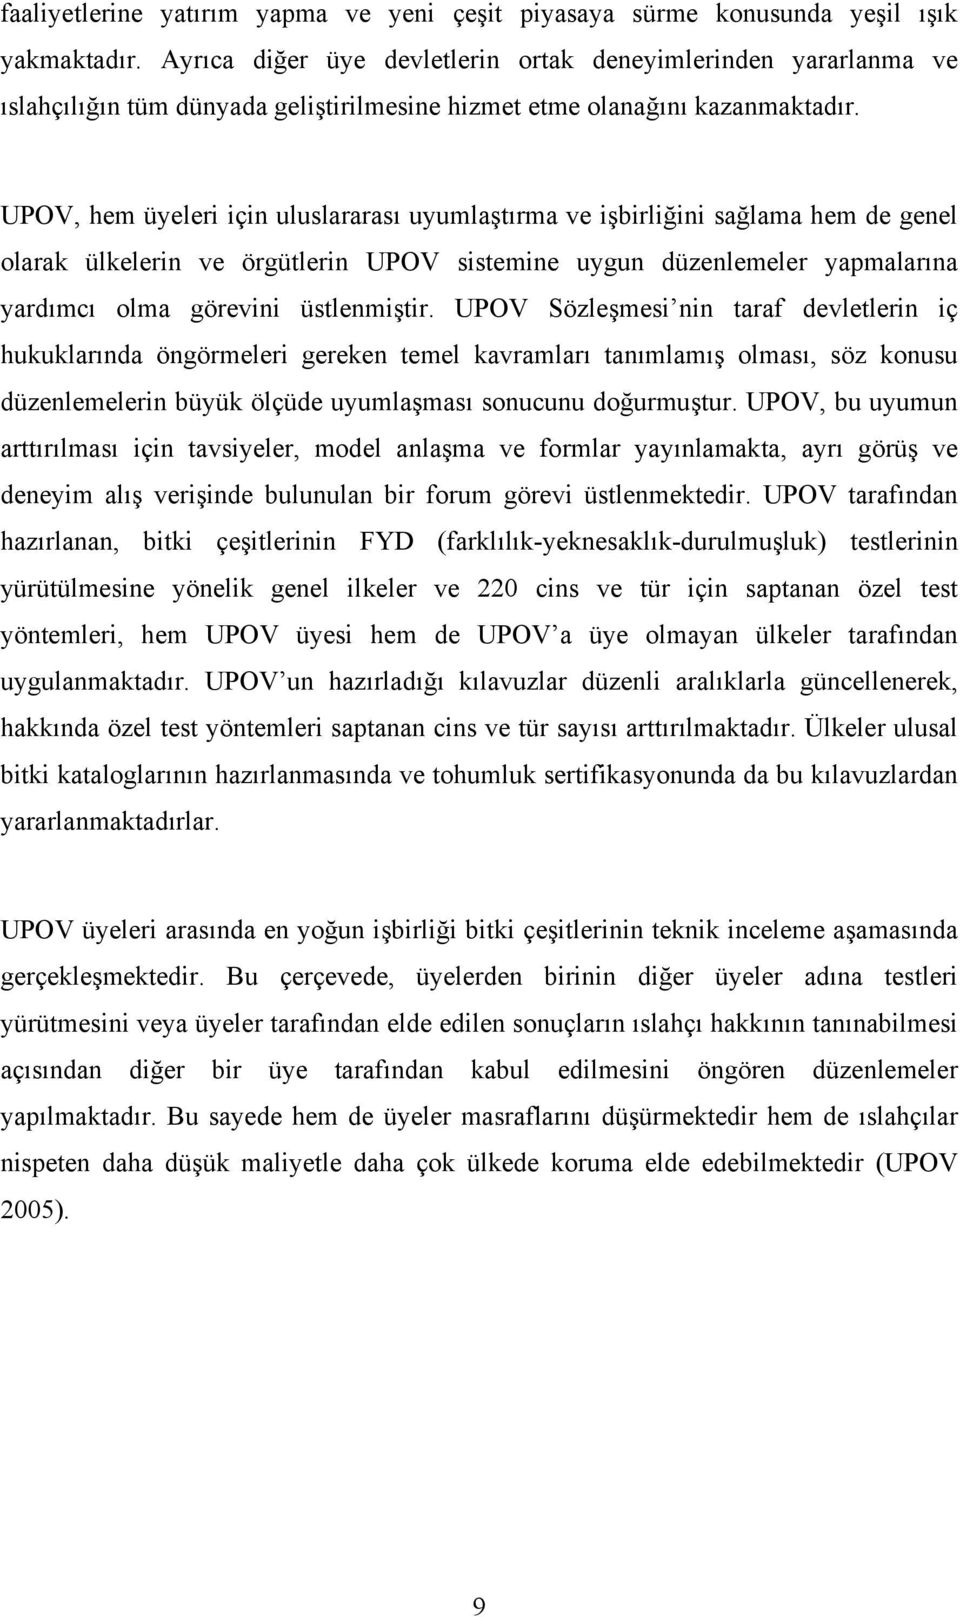 UPOV, hem üyeleri için uluslararası uyumlaştırma ve işbirliğini sağlama hem de genel olarak ülkelerin ve örgütlerin UPOV sistemine uygun düzenlemeler yapmalarına yardımcı olma görevini üstlenmiştir.